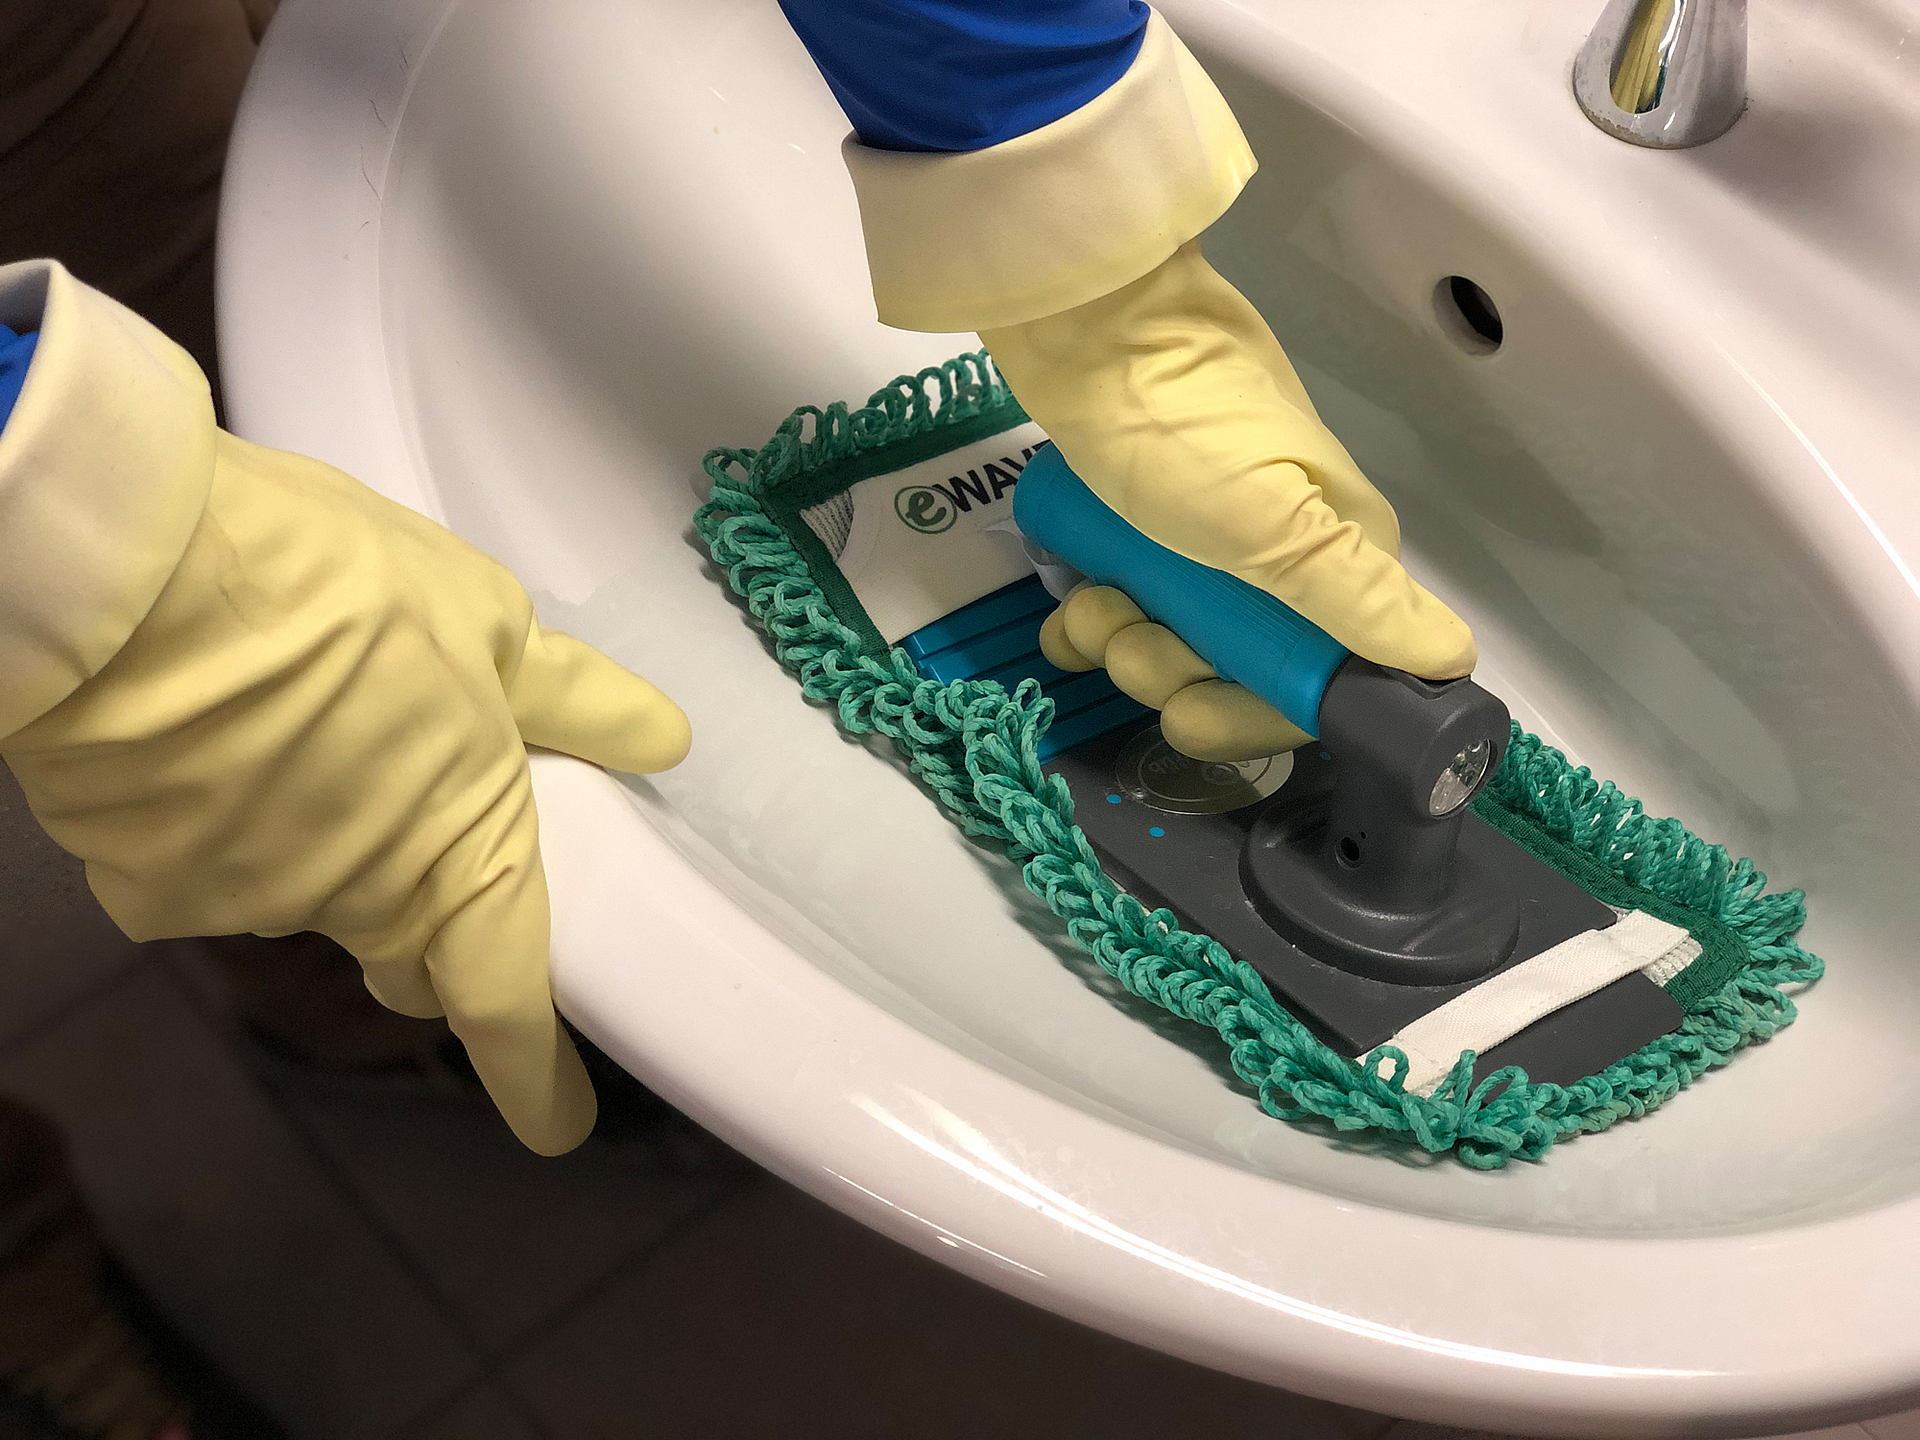 Ein Waschbecken wird mit einem Reinigungsmopp gesäubert. Die Person trägt hellgelbe Schutzhandschuhe.